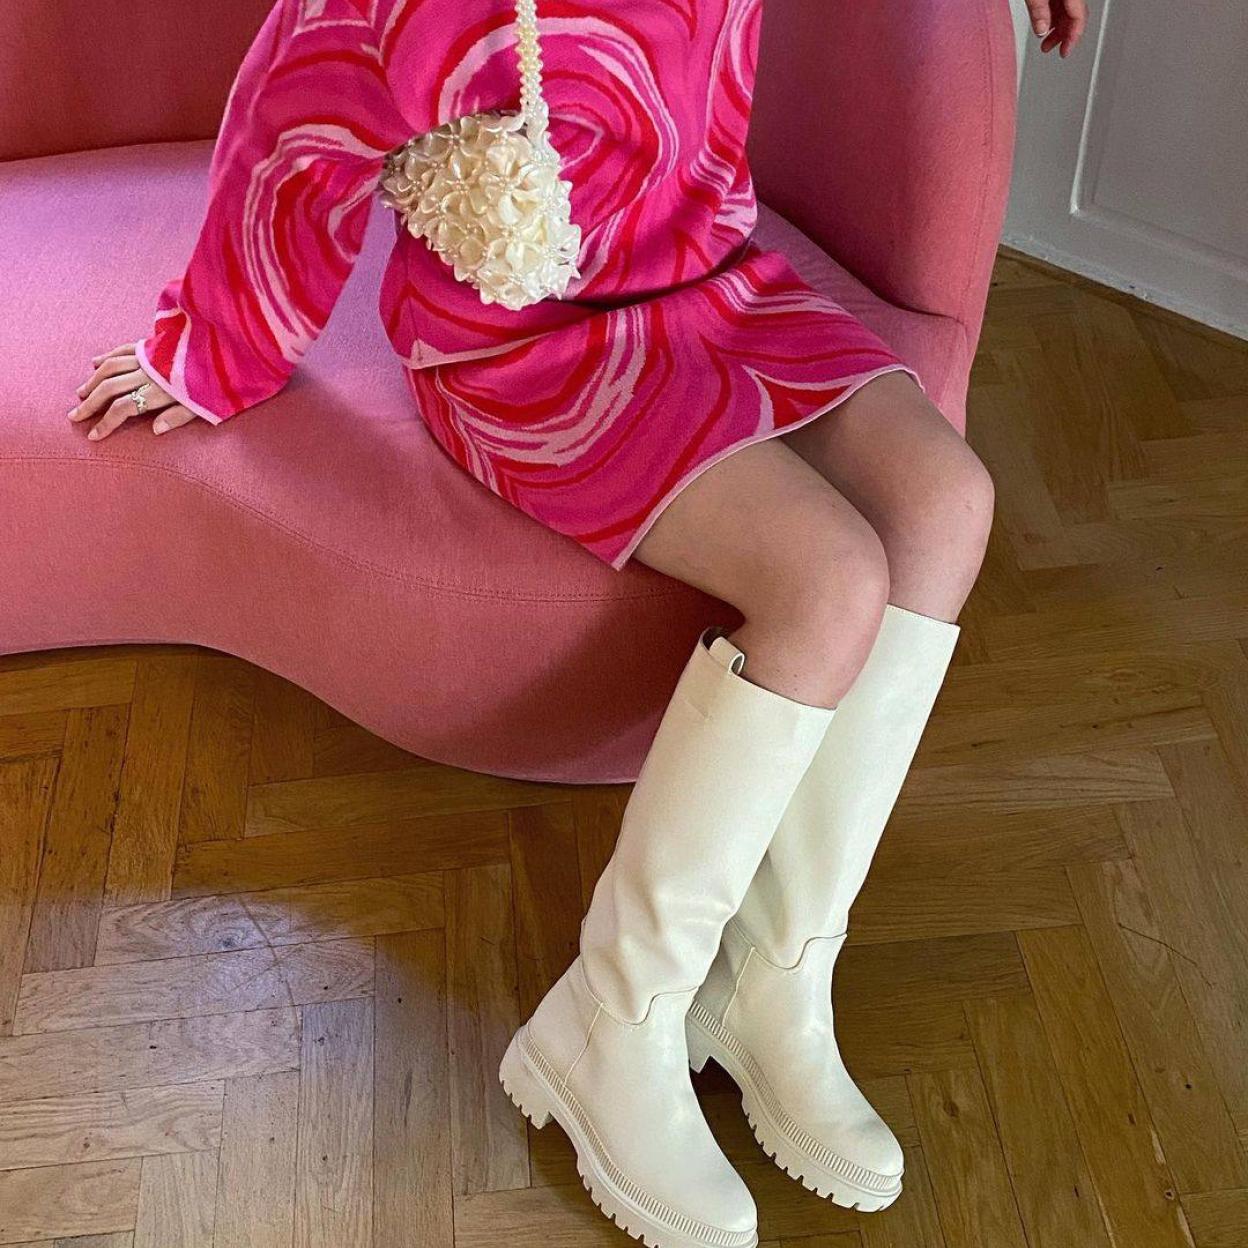 Botas blancas: los zapatos más exitosos y versátiles de la temporada  inspirados en los años 60 que sientan ideal con mini vestidos | Mujer Hoy